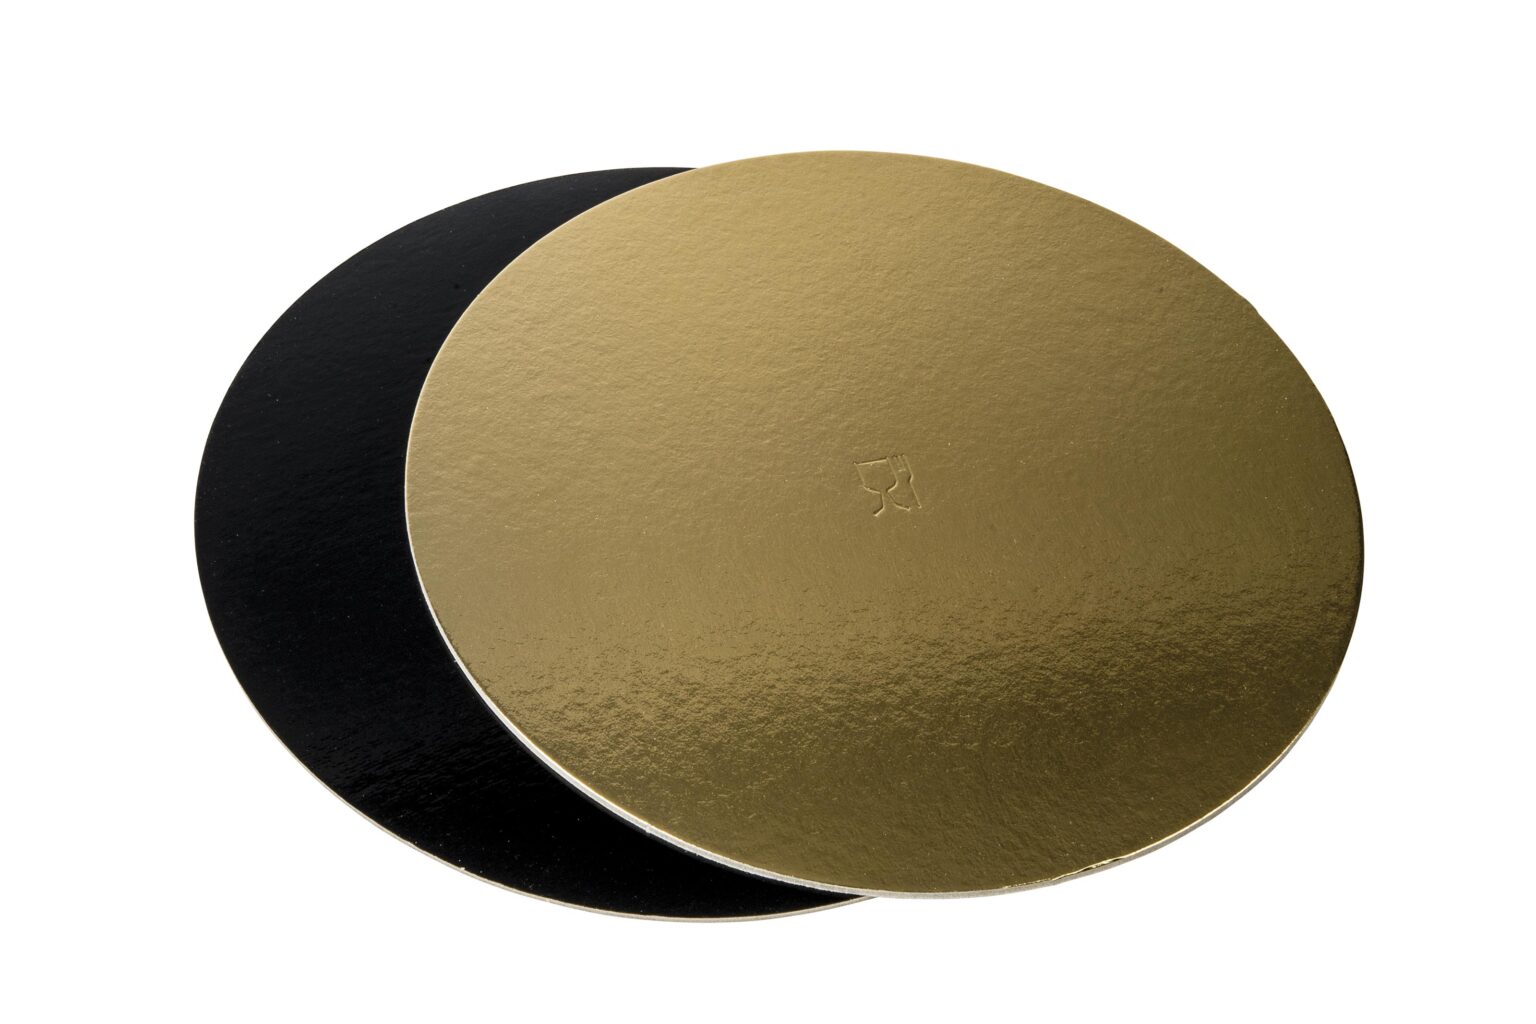 Discuri groase auriu/negru - Discuri groase auriu/negru 2400 gr OE28cm - 10 buc/set